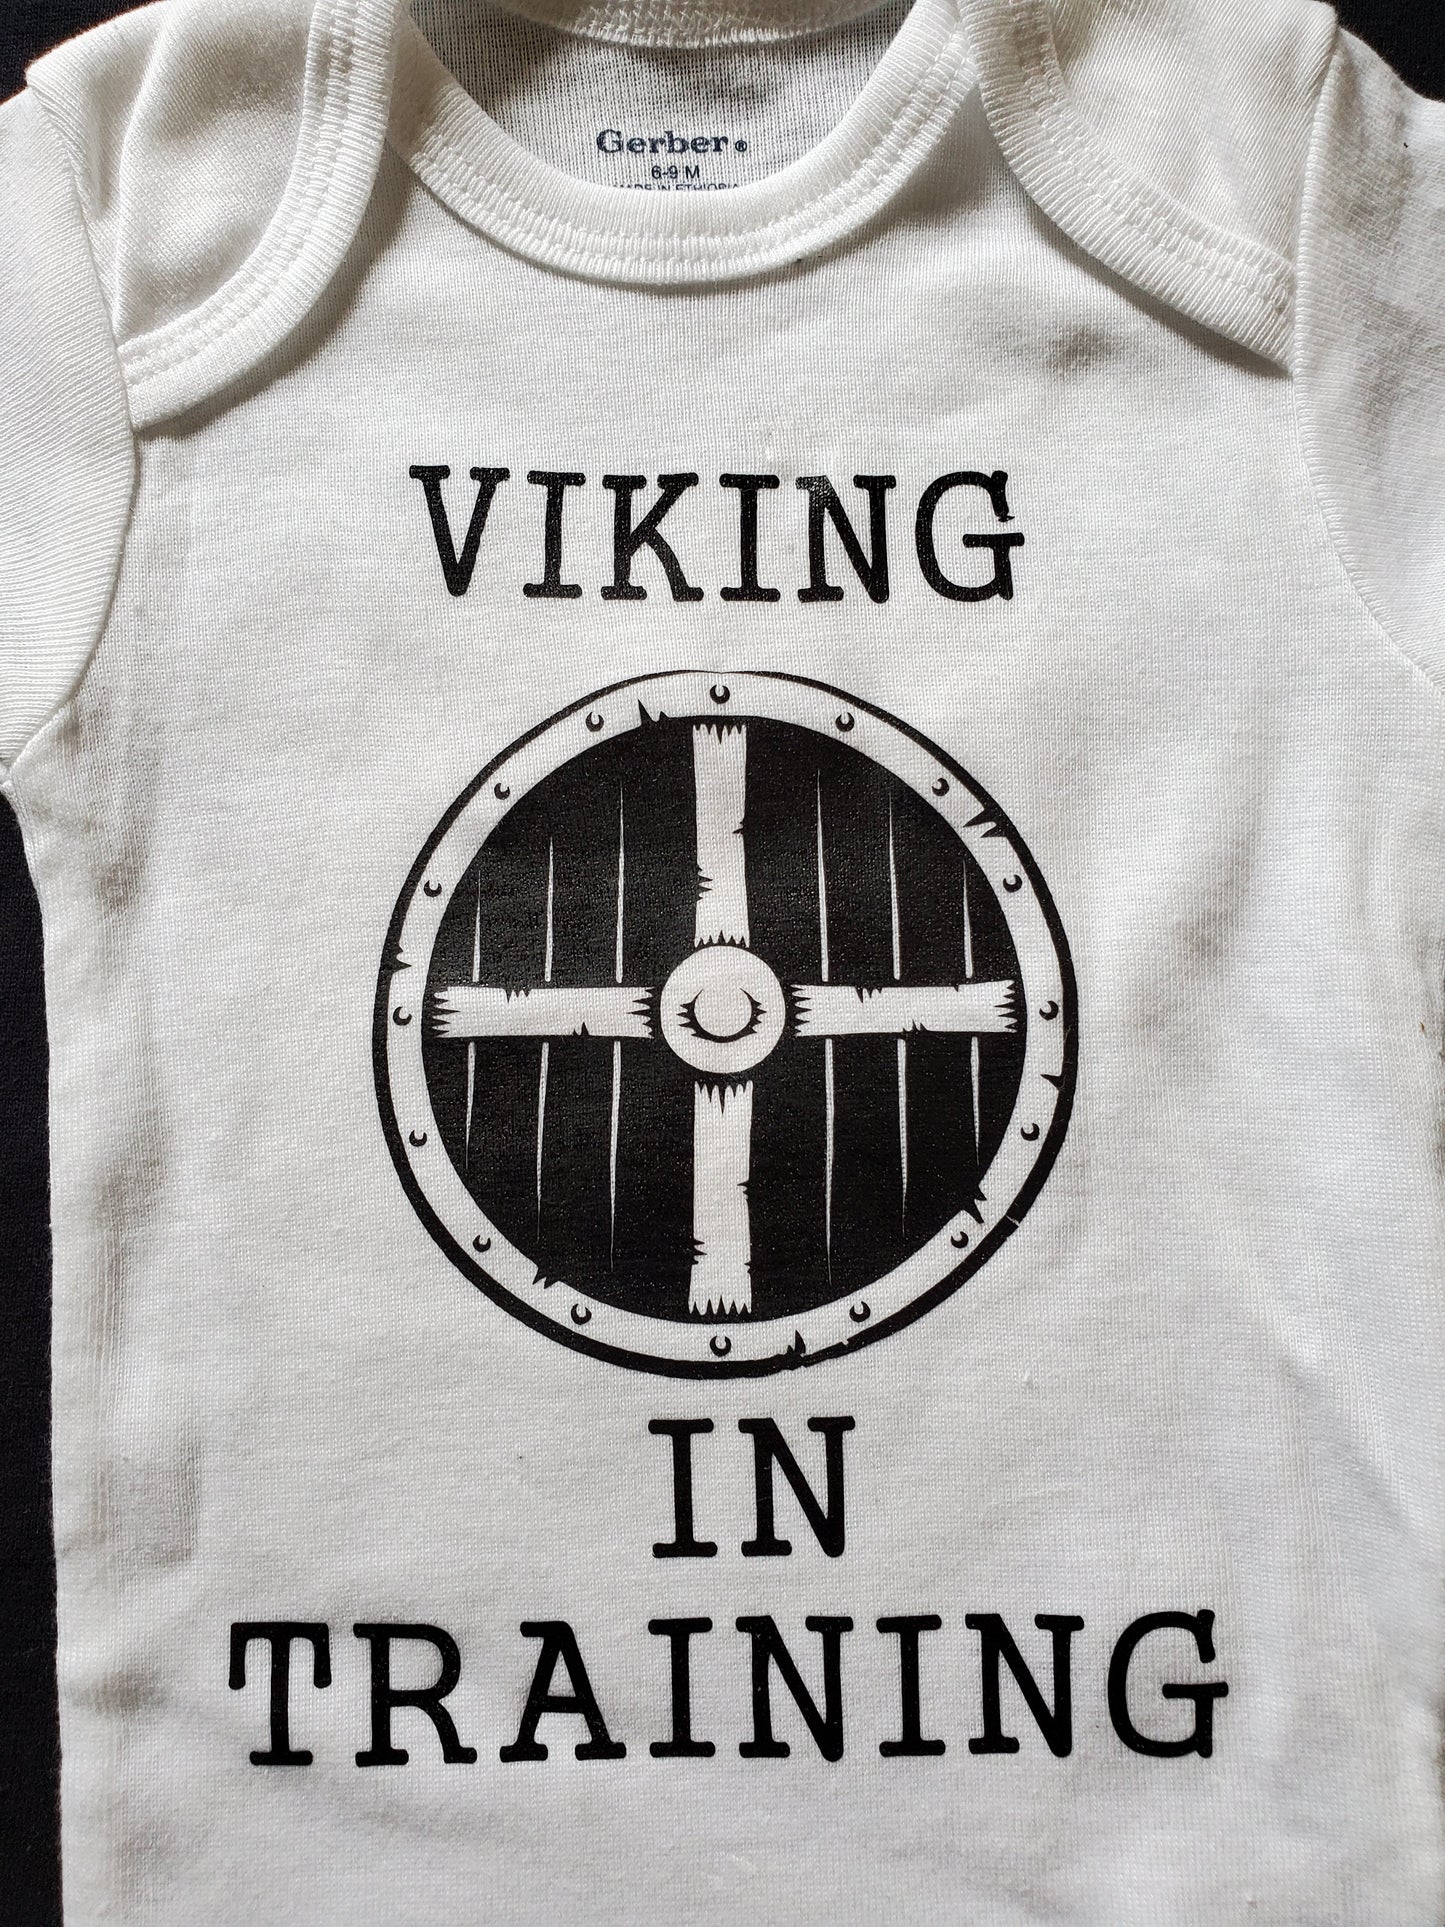 Viking In Training Onesie // Viking Onesie